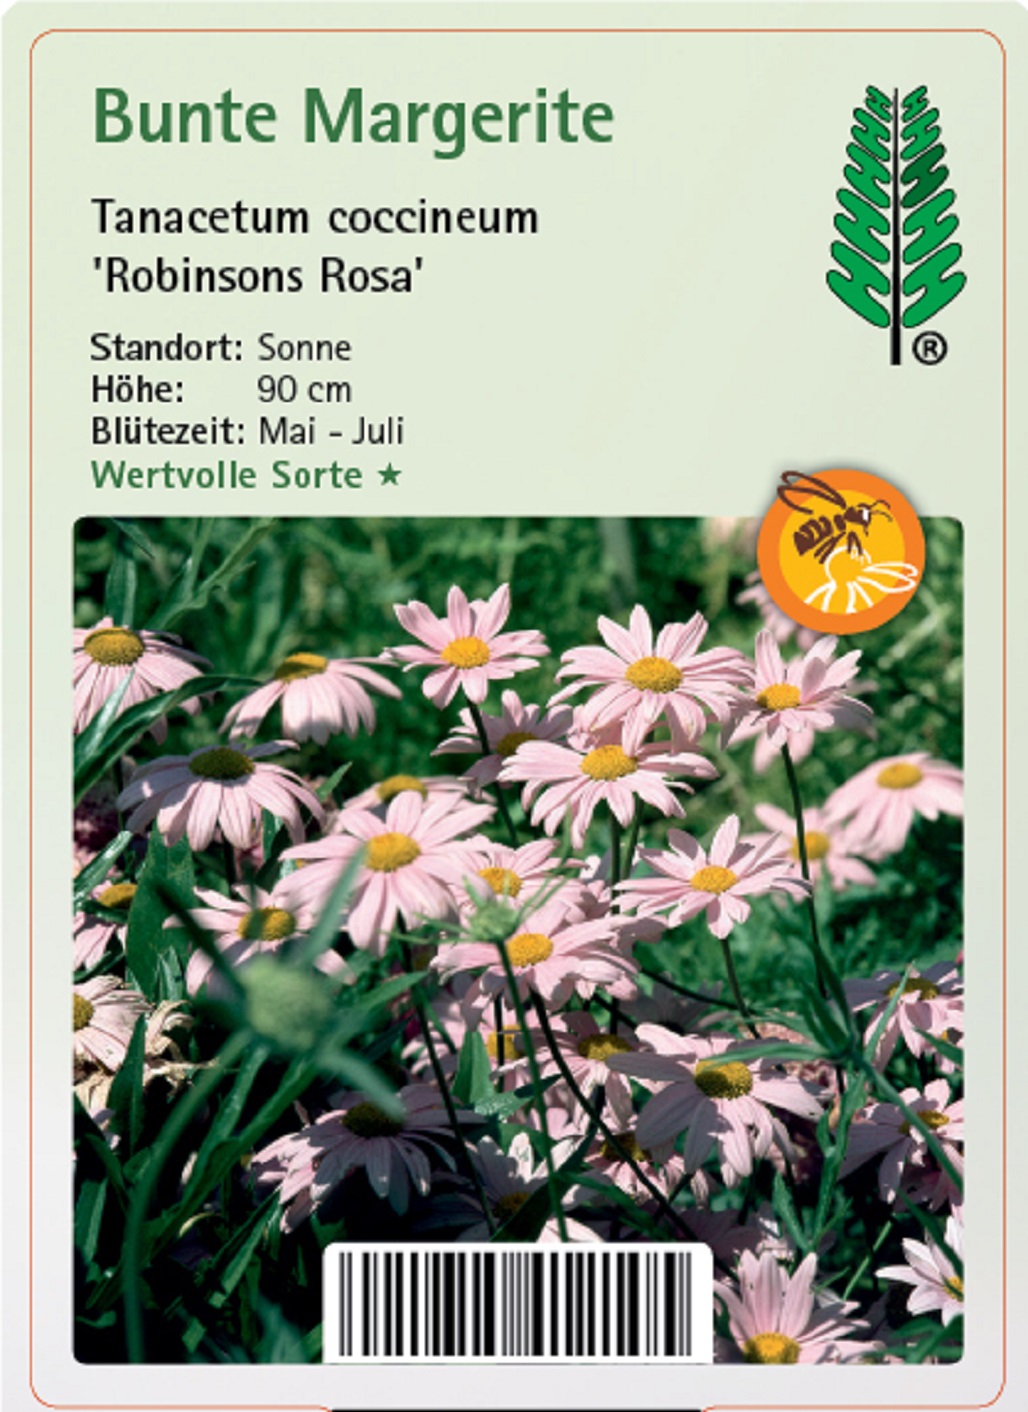 Bunte Margerite - Tanacetum coccineum 'Robinsons Rosa', 11cm Topf